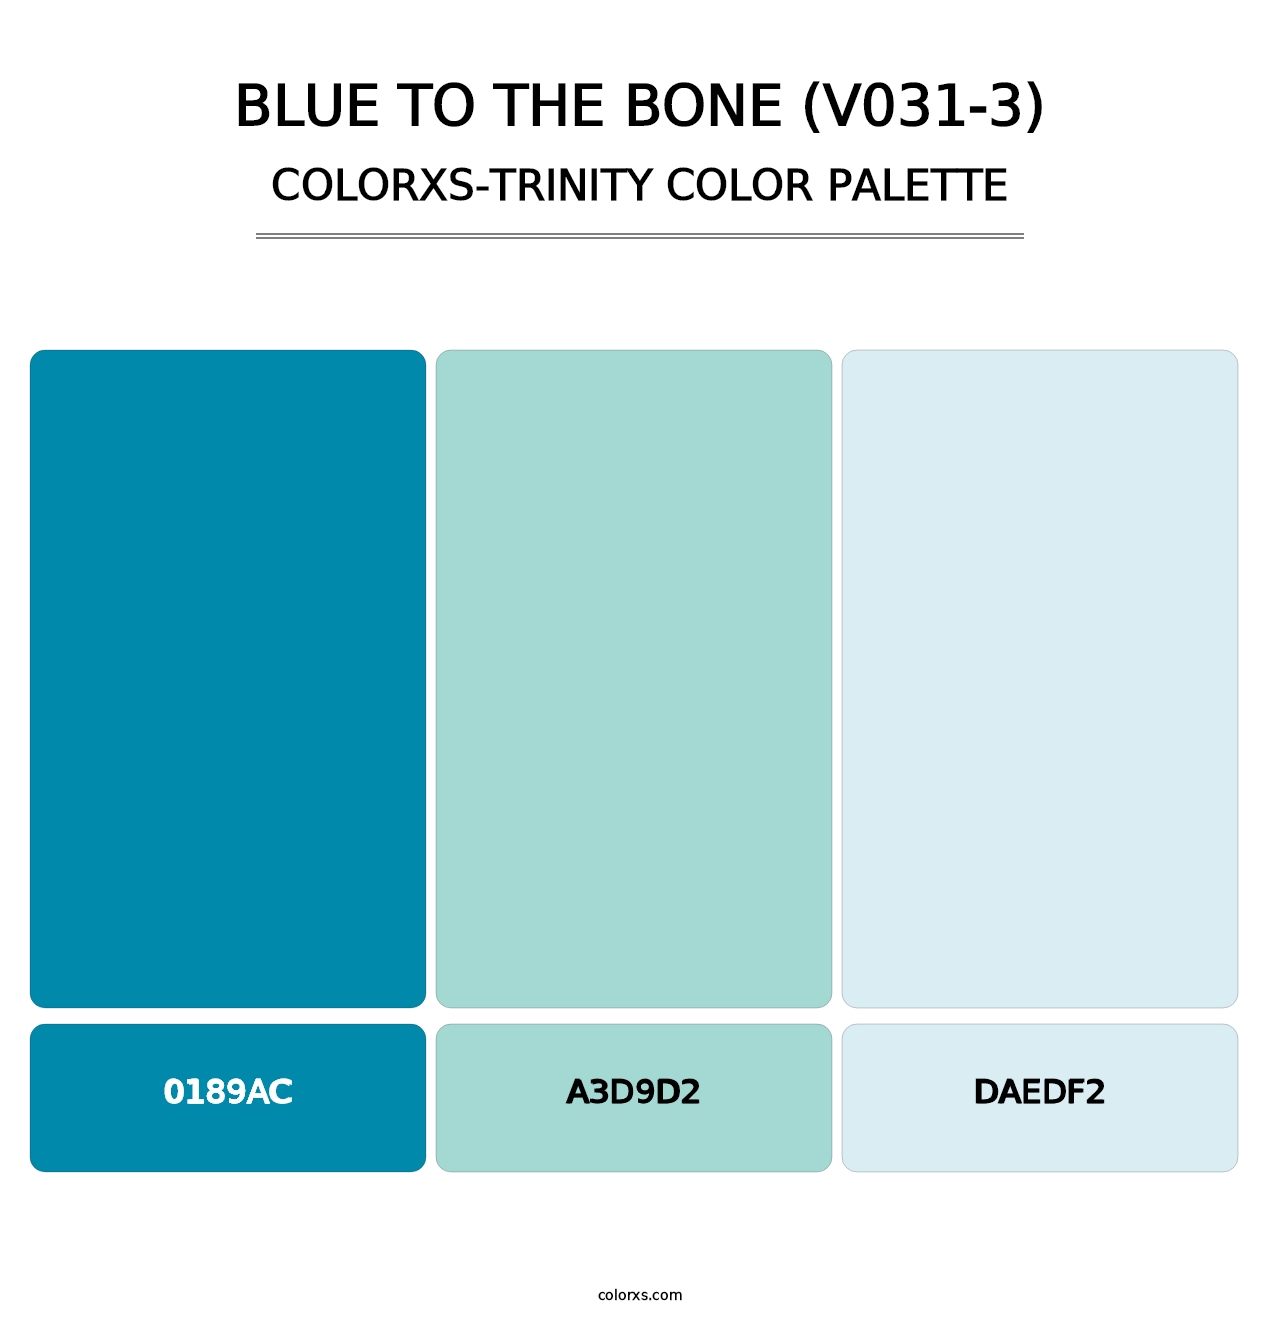 Blue to the Bone (V031-3) - Colorxs Trinity Palette